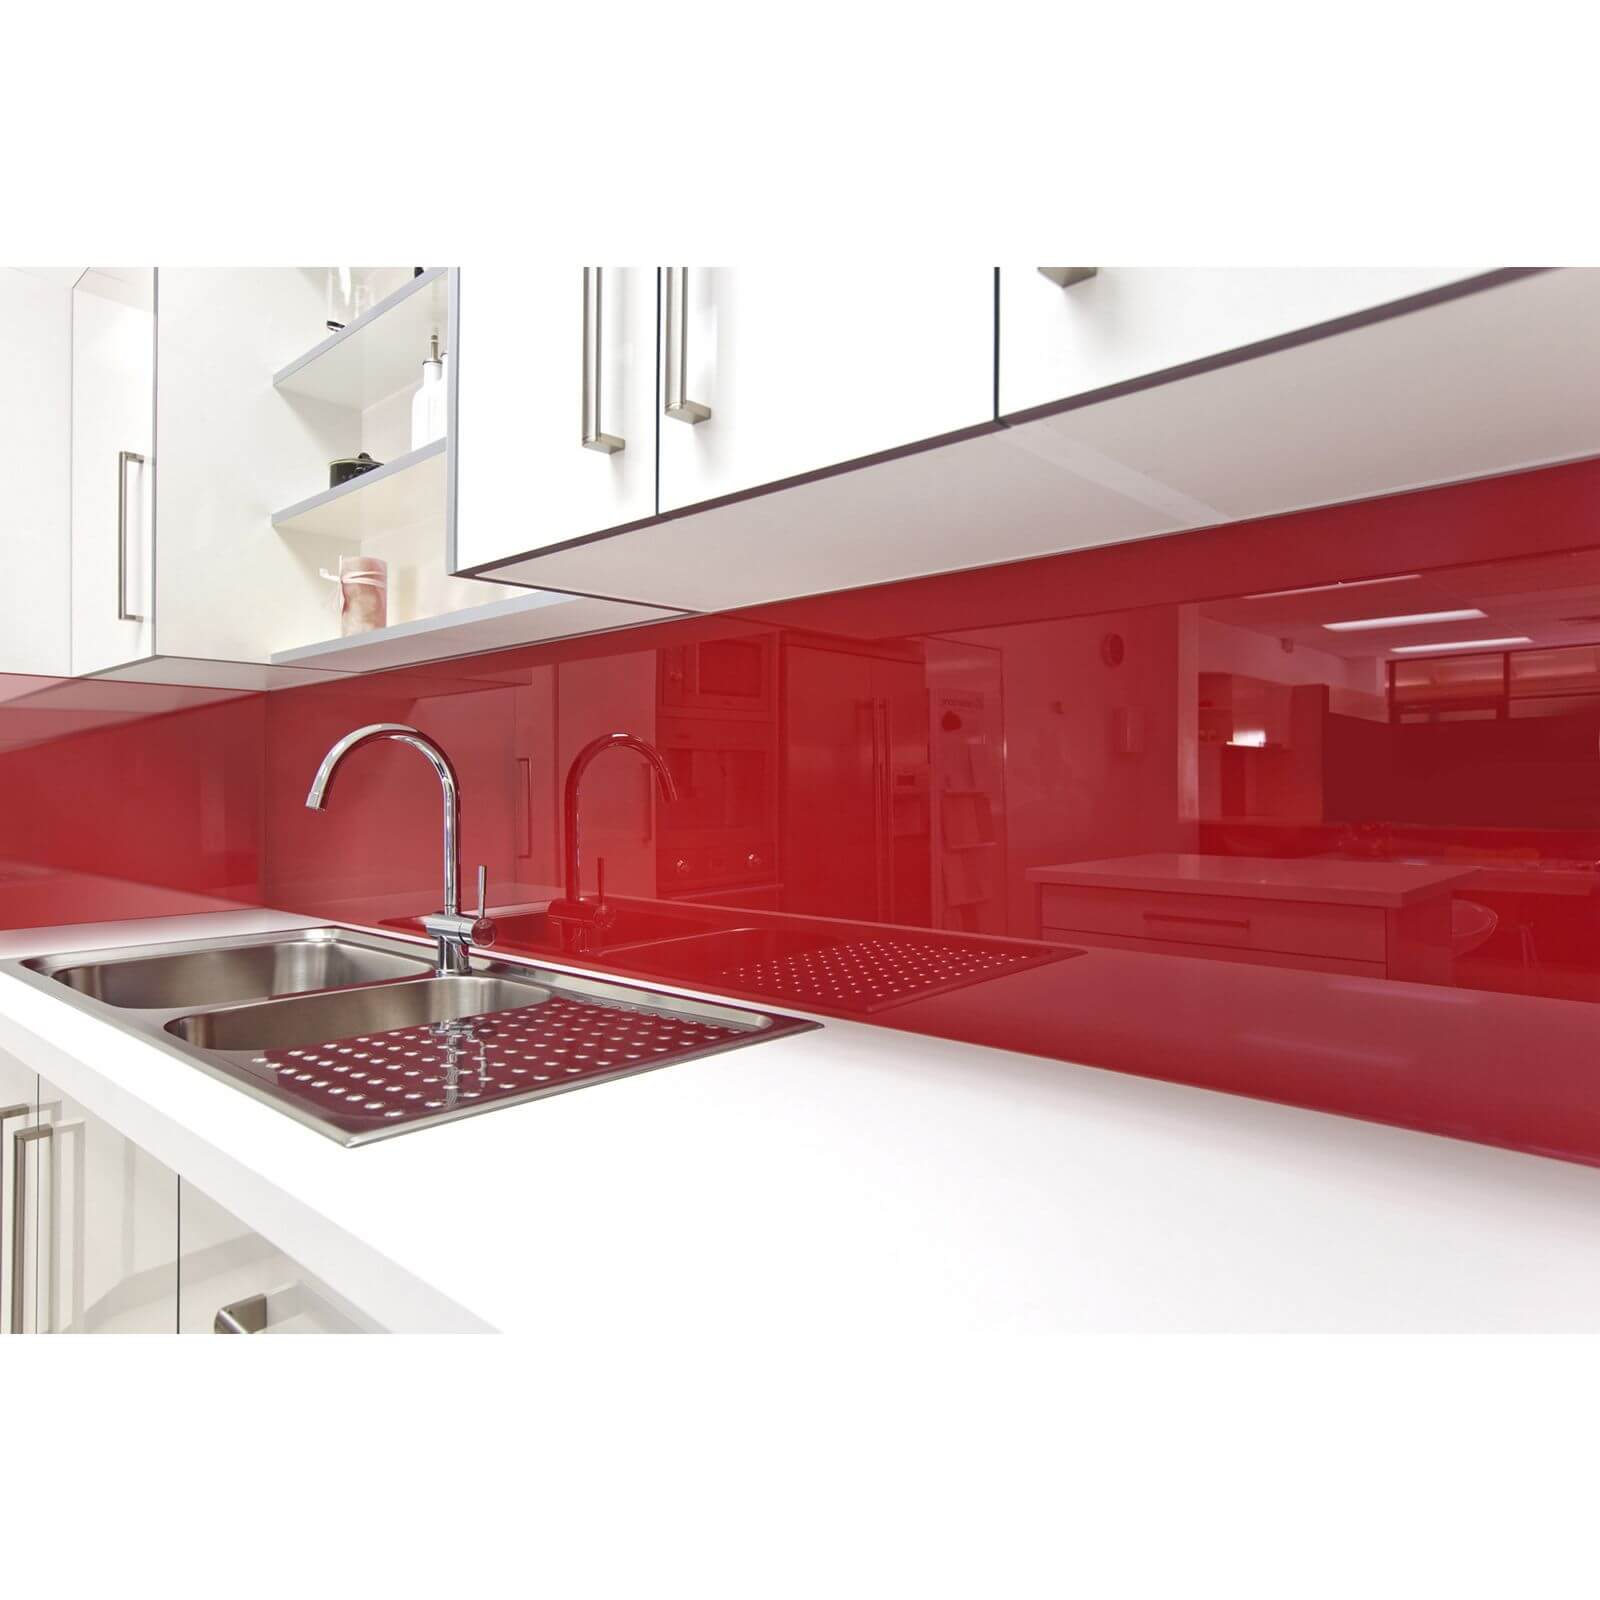 Zenolite Acrylic Kitchen Splashback Panel - 2070 x 500mm - Red